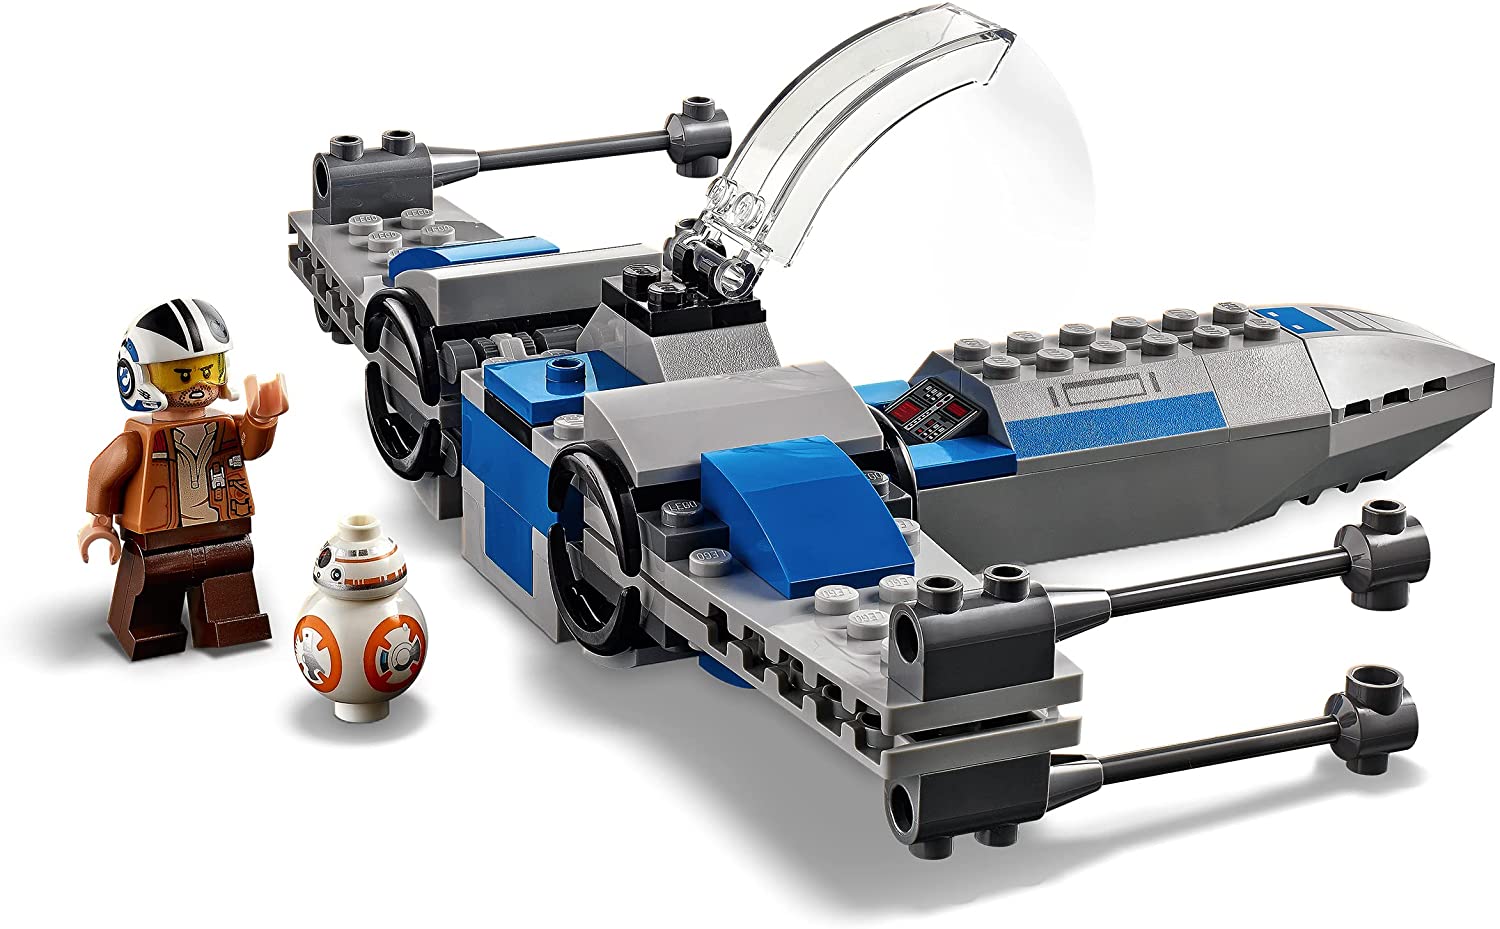 LEGO 75297 Star Wars Resistance X-Wing, Poe Dameron und Droidenfigur BB-8